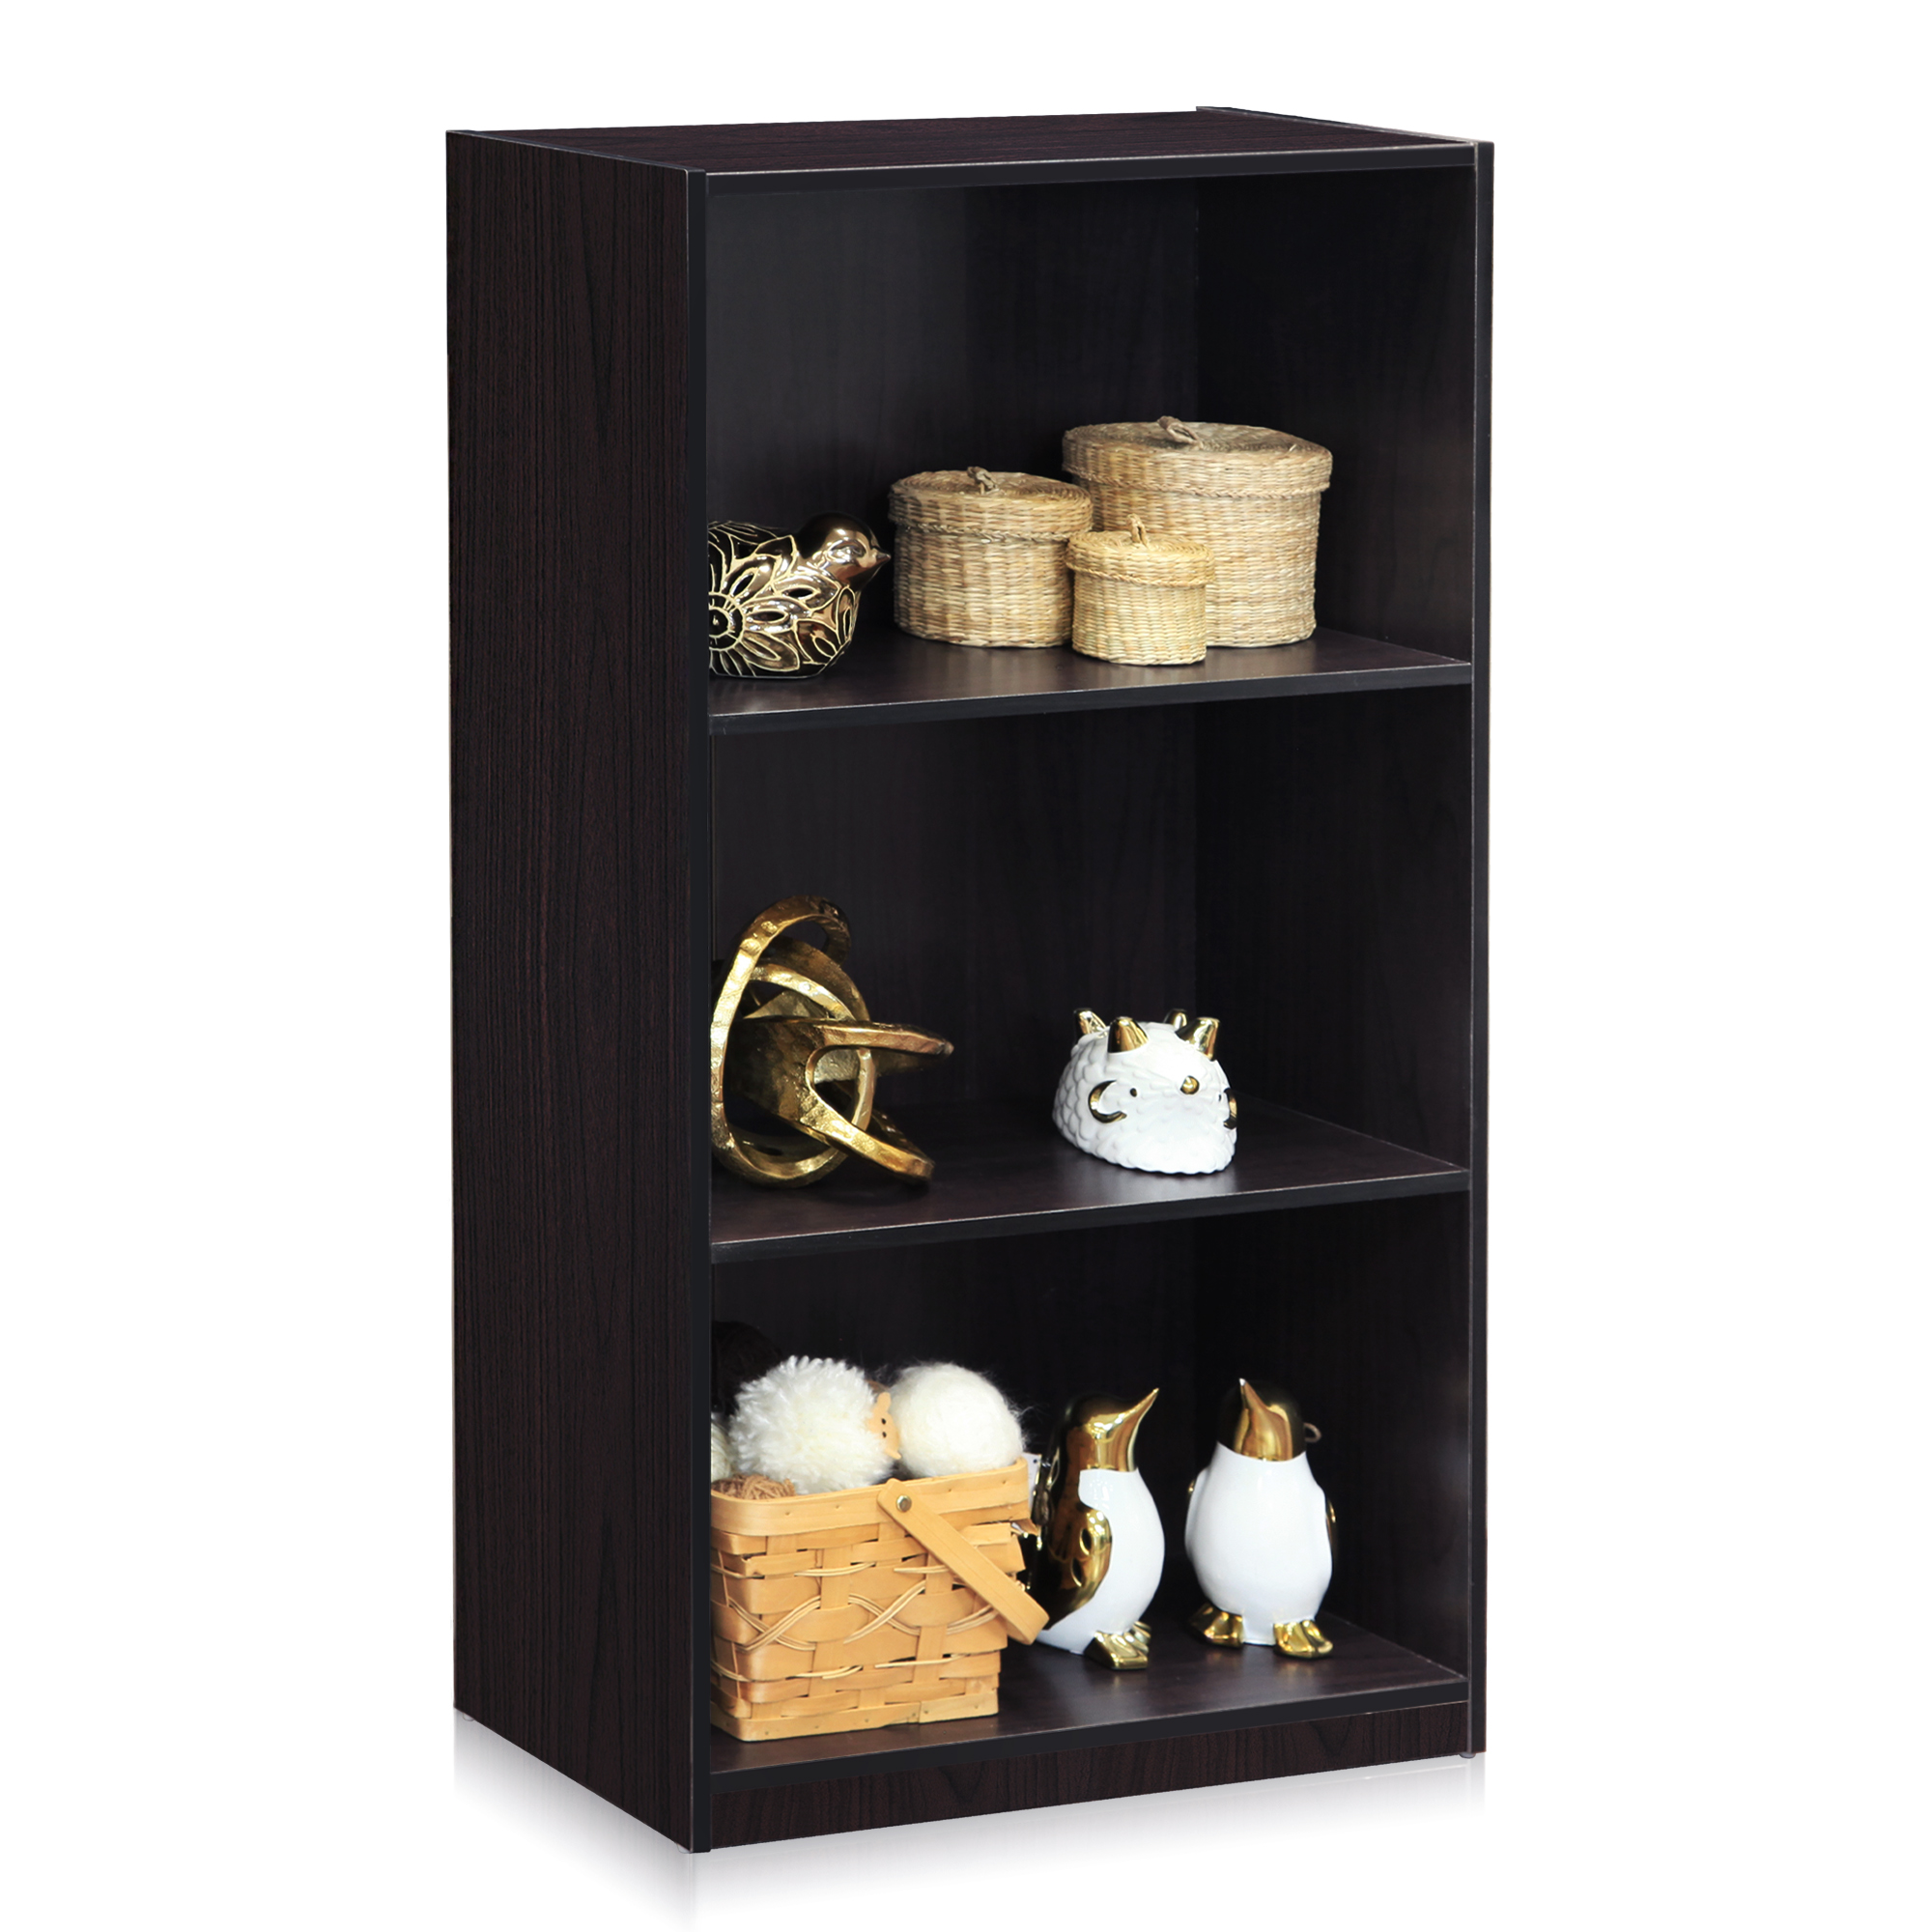 Details about   Furinno Basic 3-Tier Bookcase Storage Shelves Dark Walnut 